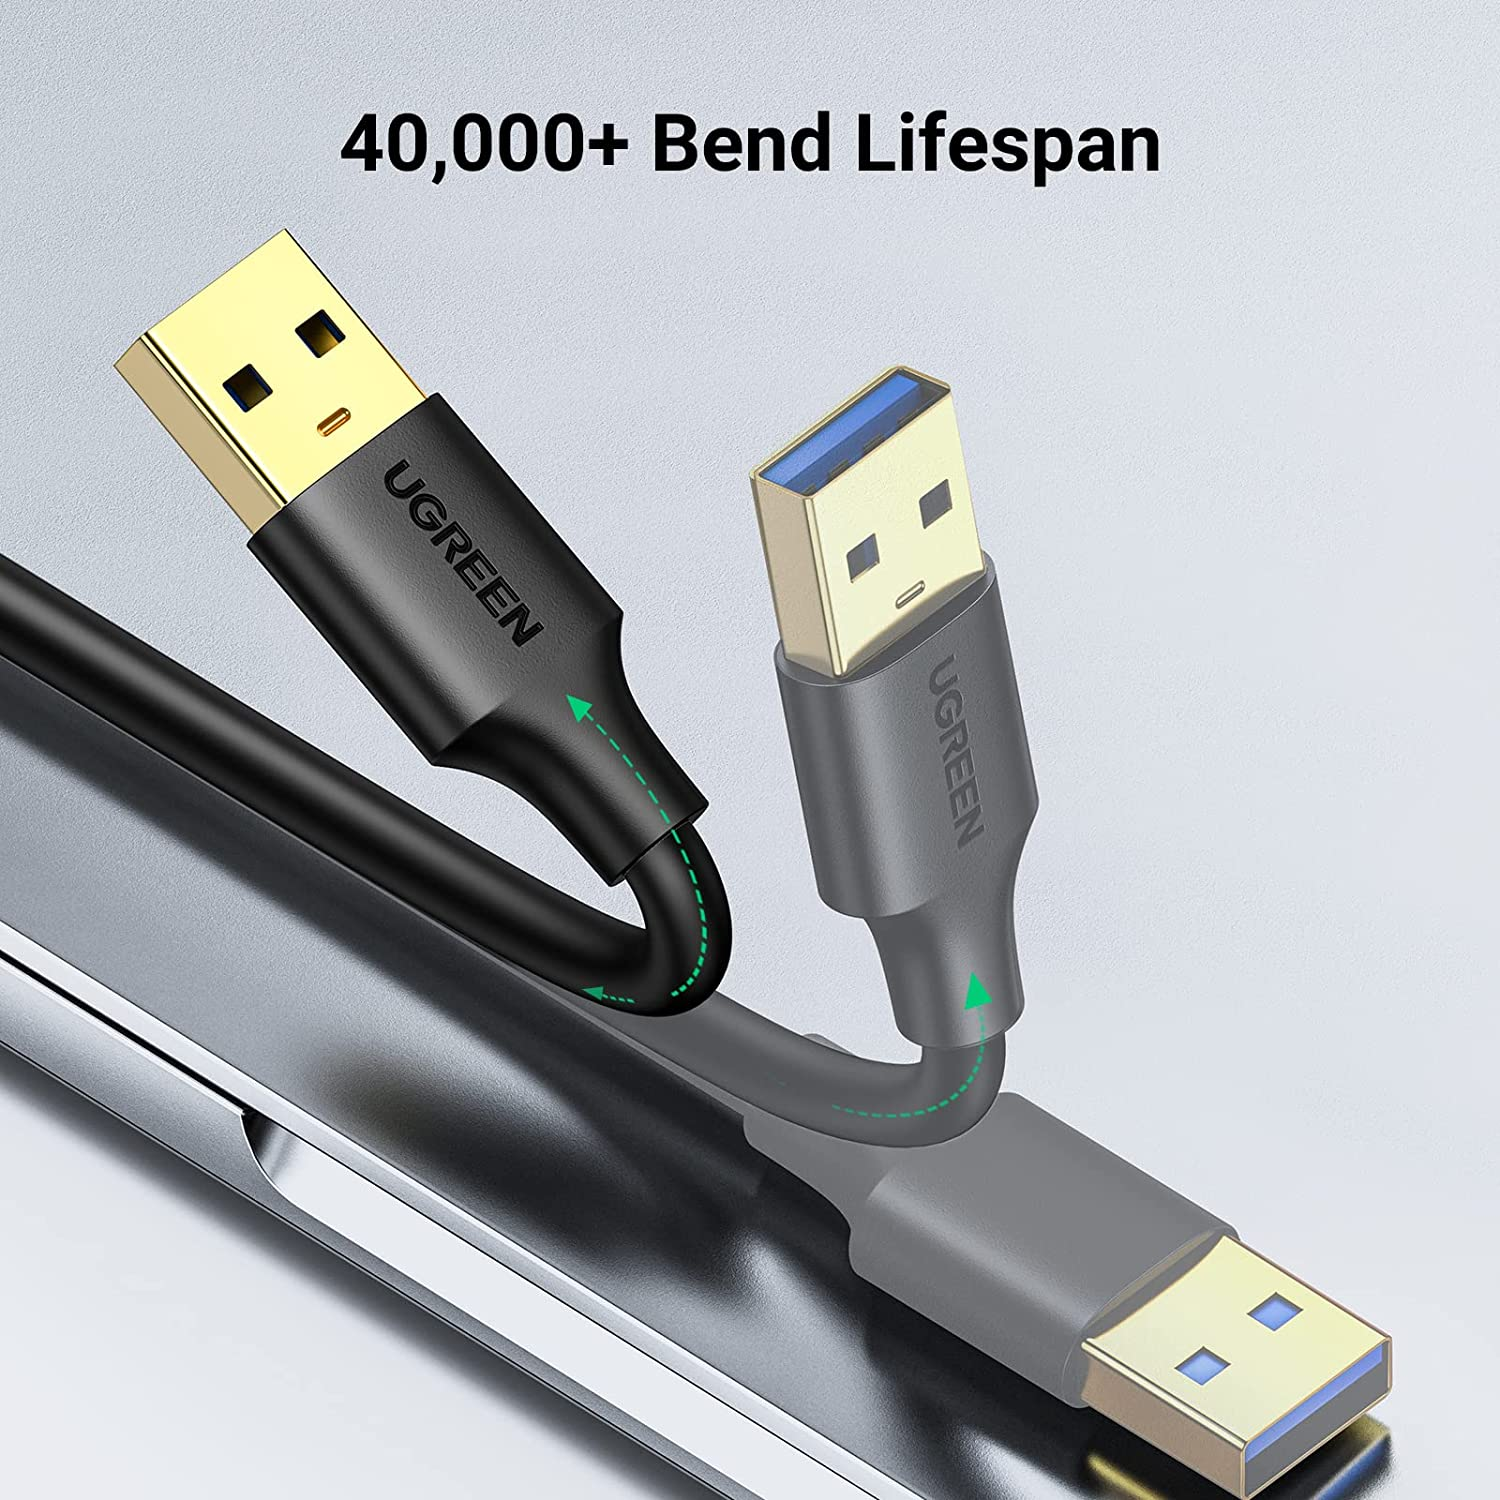 Dây - Cáp USB 3.0 nối hai đầu dương dương dài 1.5M chính hãng Ugreen 10310 cao cấp